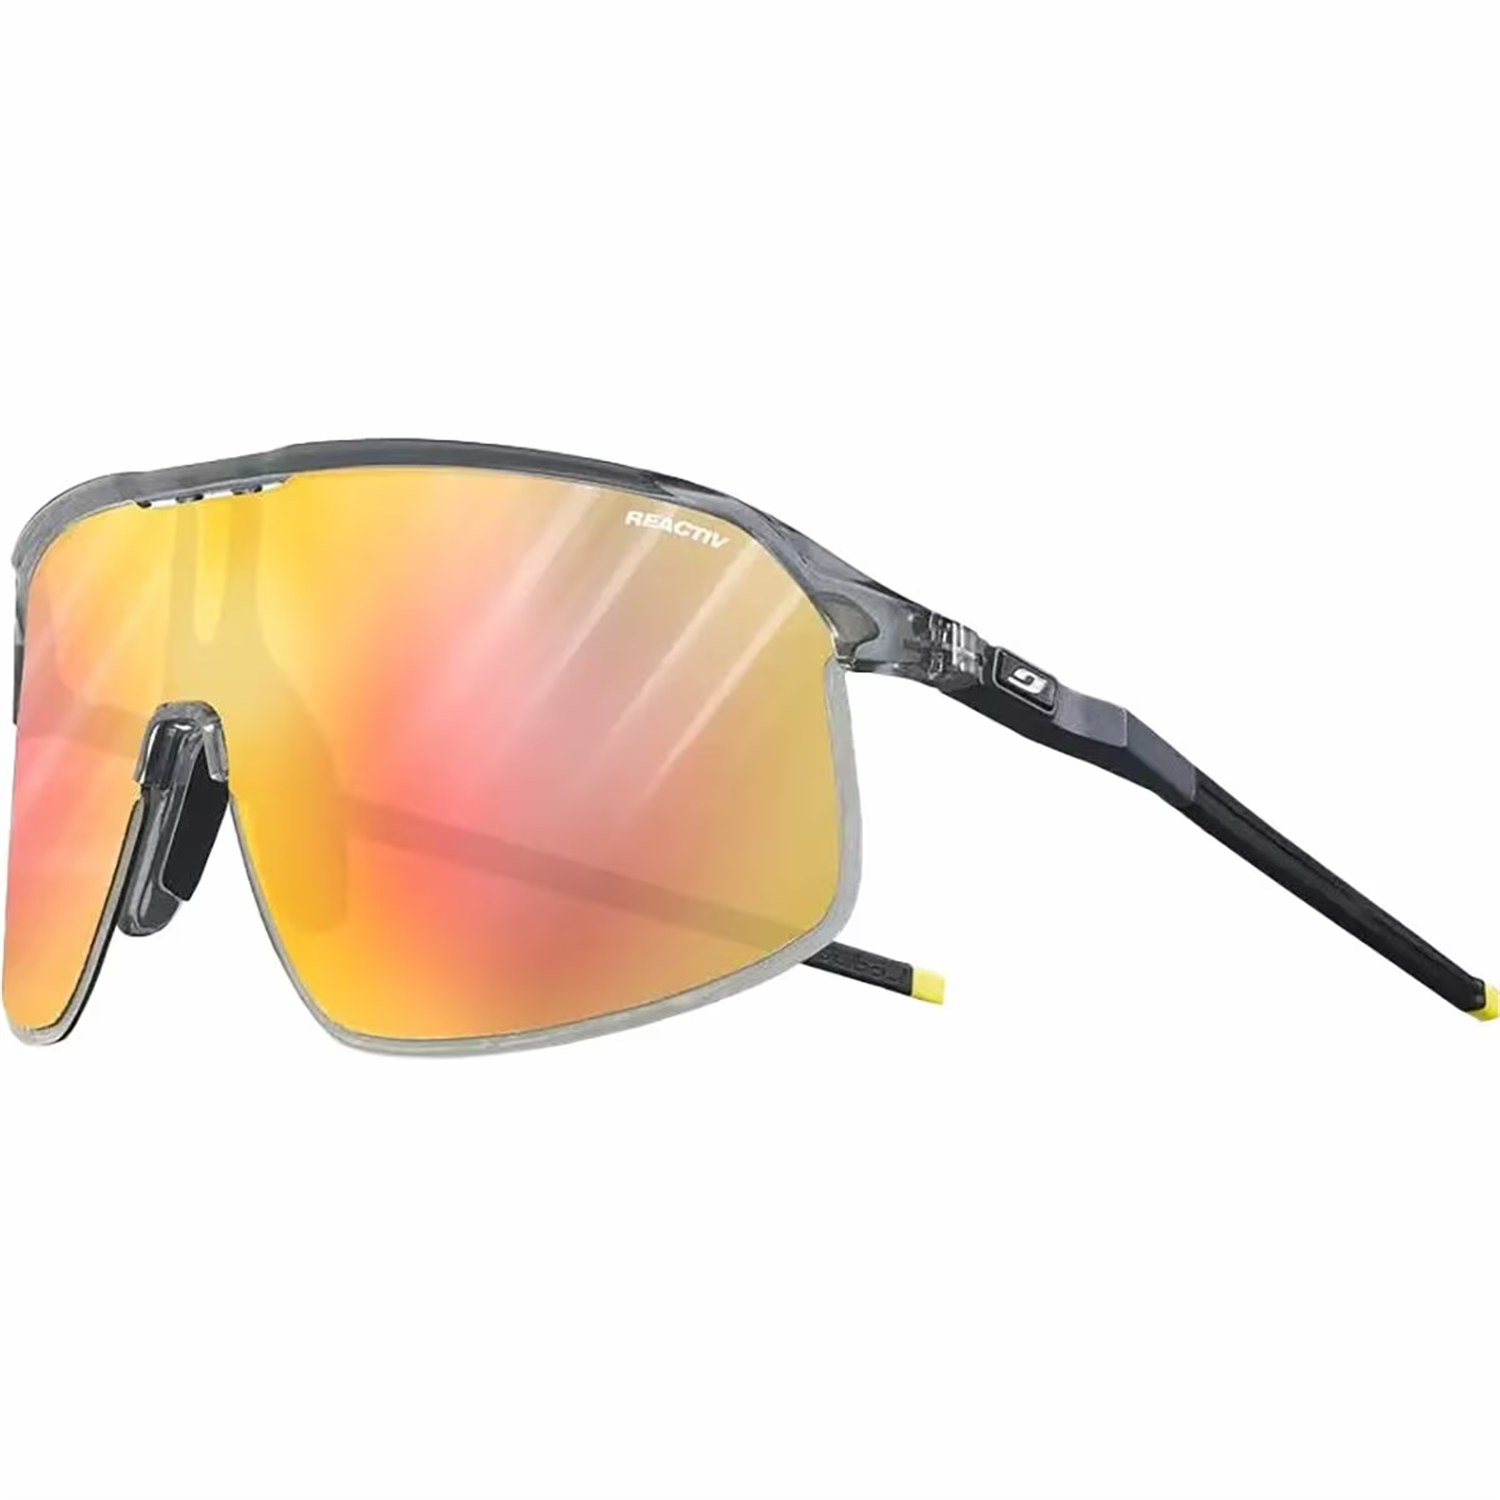 Солнцезащитные очки Julbo Density, цвет Translucent Gray/Blue REACTIV 1-3 Light Amlpifier мотоциклисты оснащены очками для пересеченной местности ветрозащитные очки защитные очки лыжные очки цветные очки